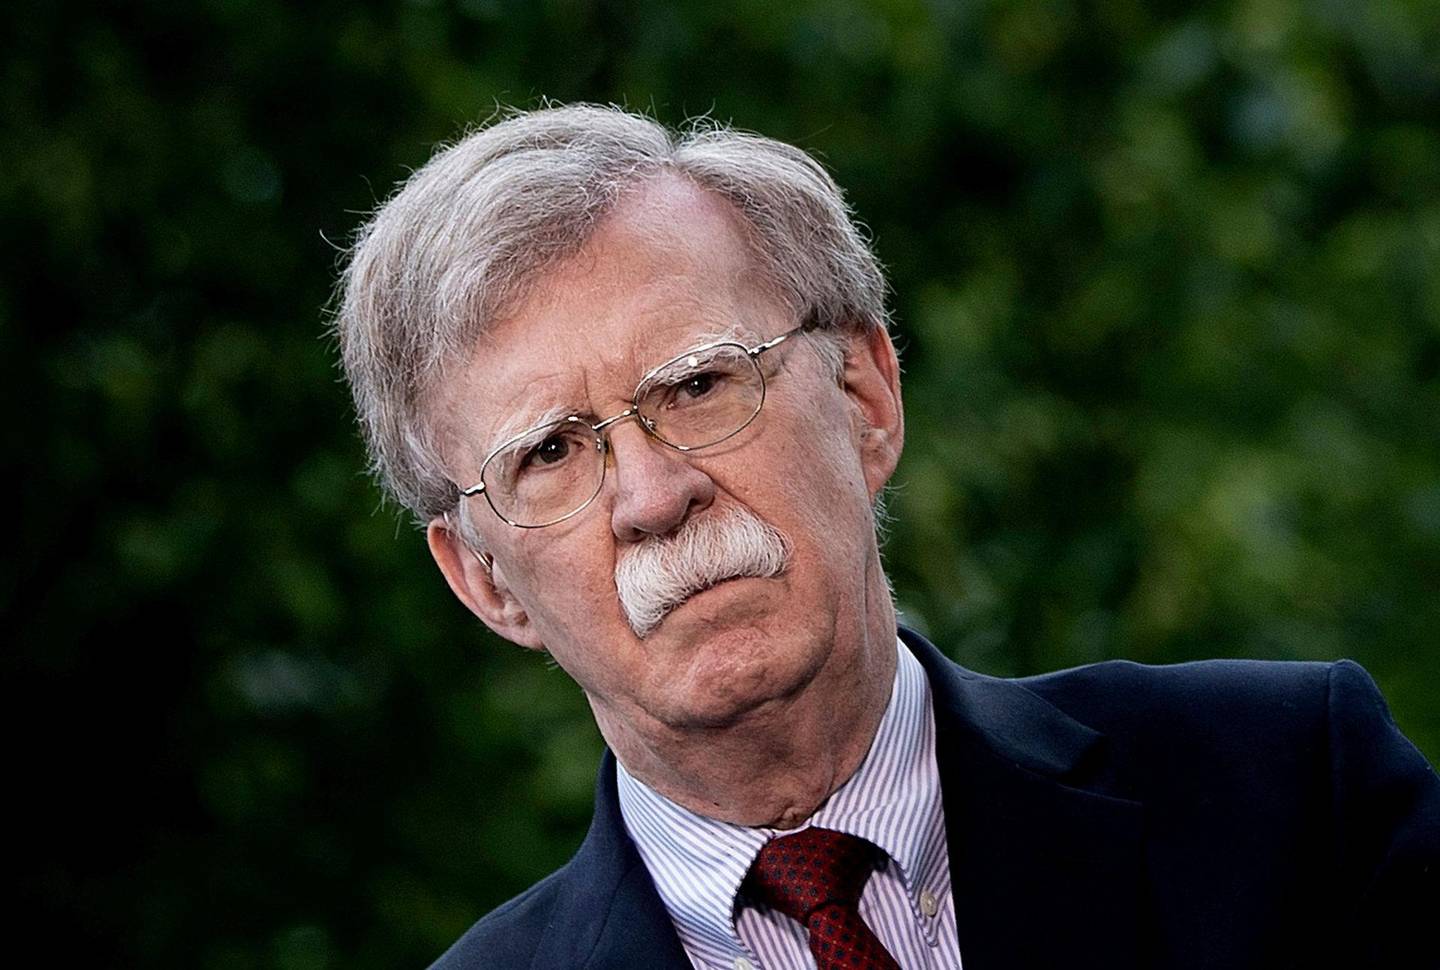 KRIGSHISSER: Trump nasjonale sikkerhetsrådgiver John Bolton ønsker å gå til krig med Iran, mener ekspert. FOTO: NTB SCANPIX